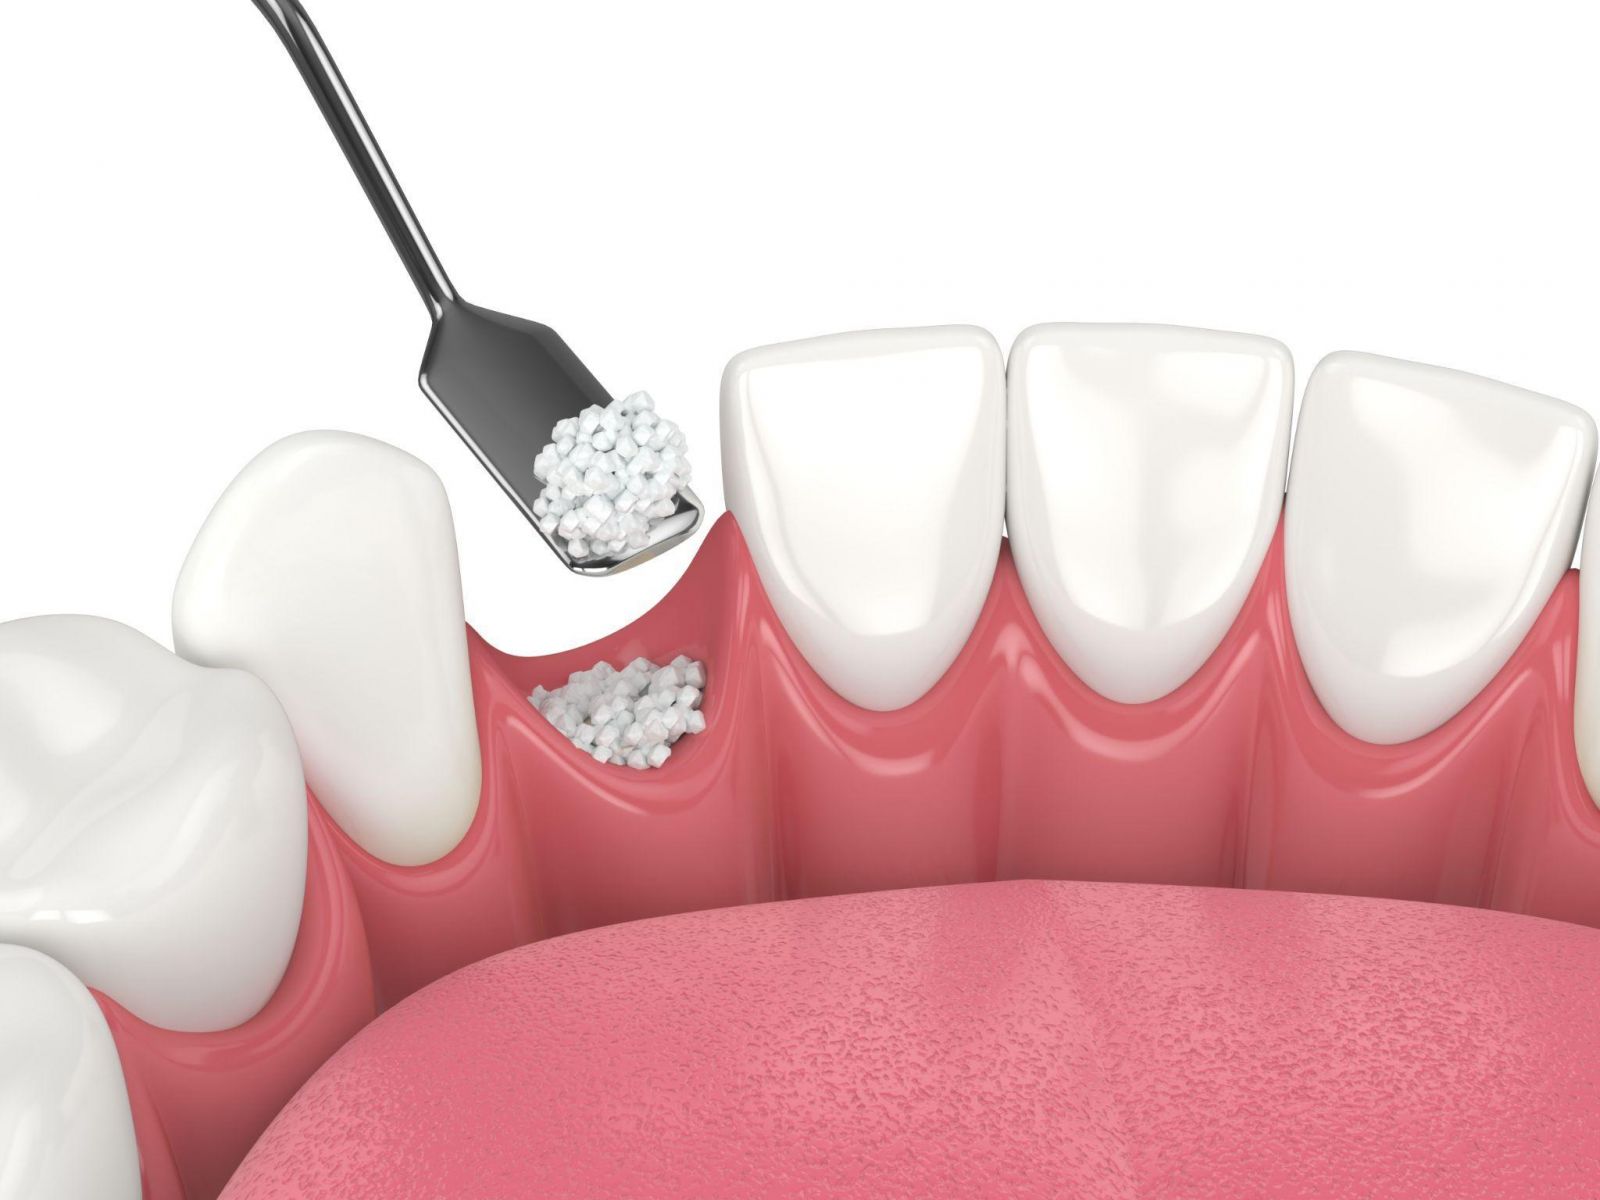 Hồi phục sau trồng răng implant: Cách chăm sóc và duy trì răng implant lâu dài